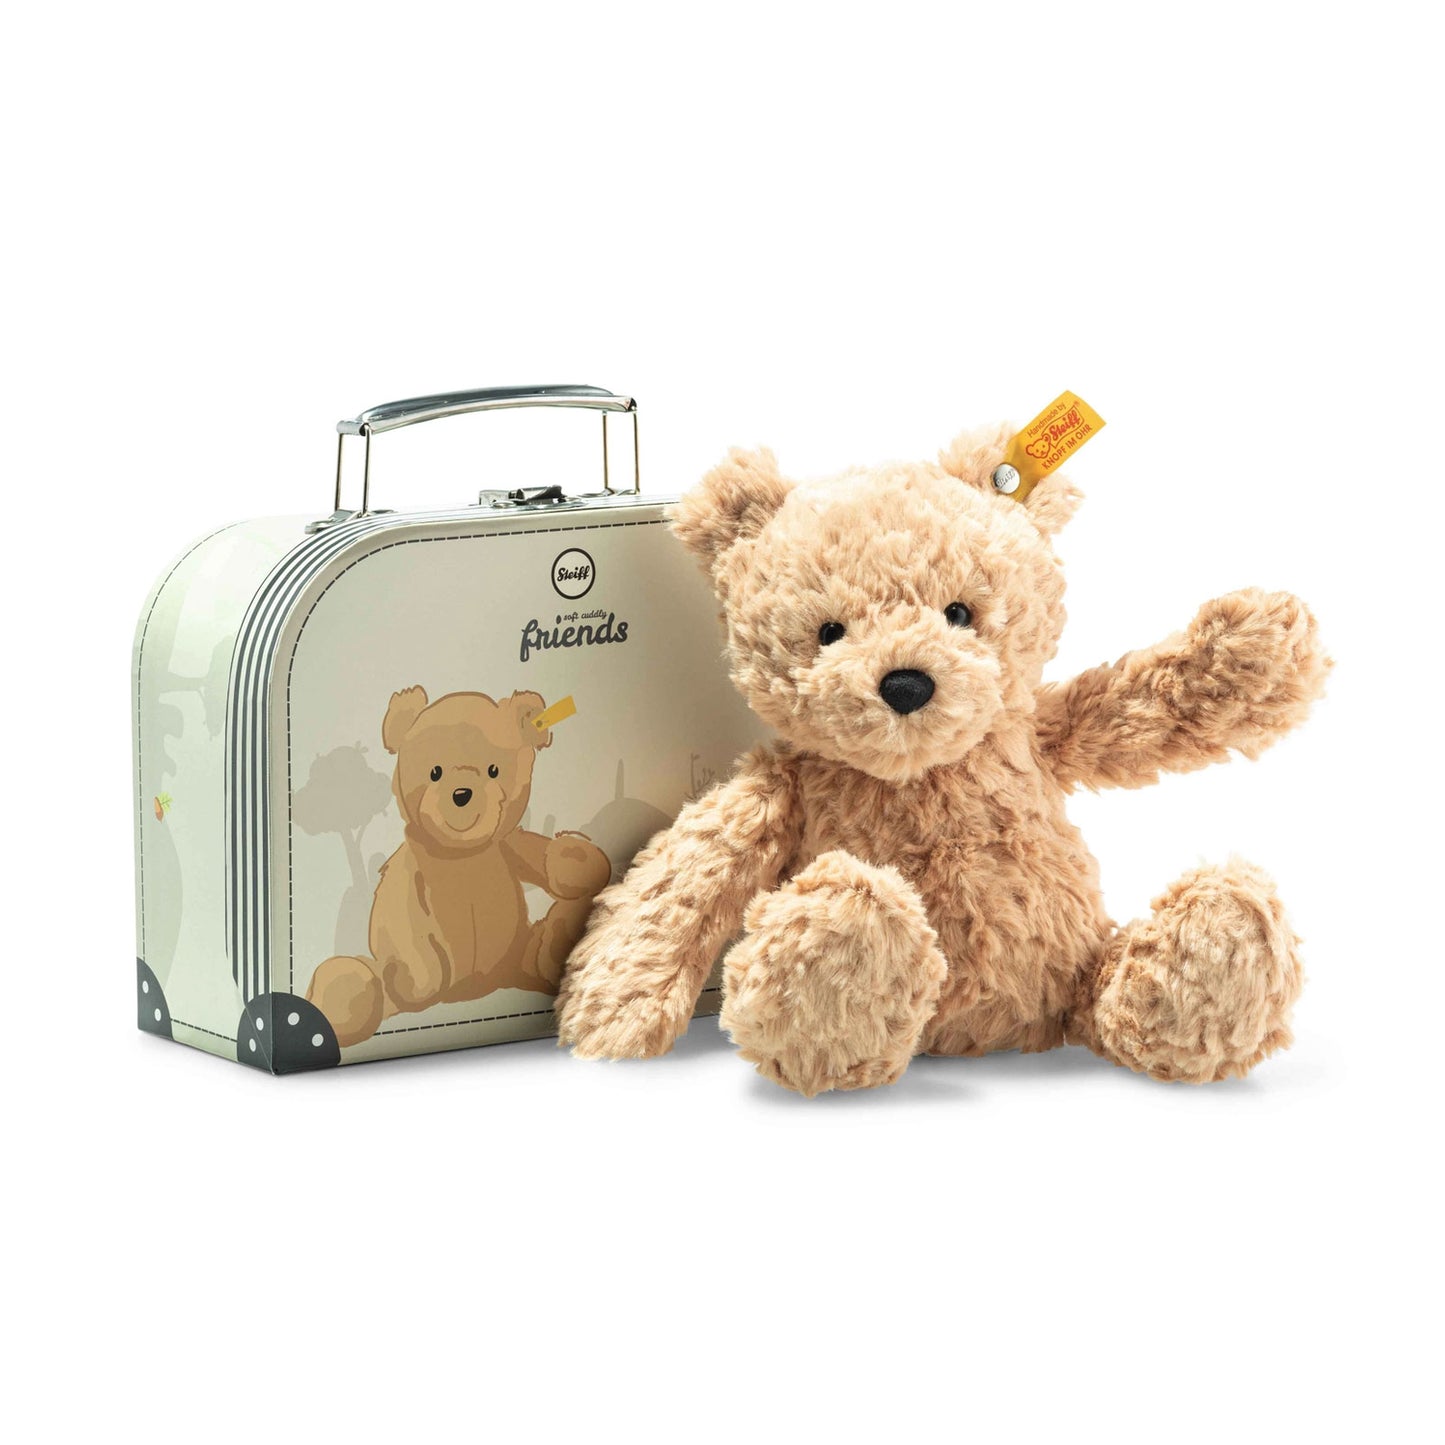 Jimmy Teddy Bear In Suitcase